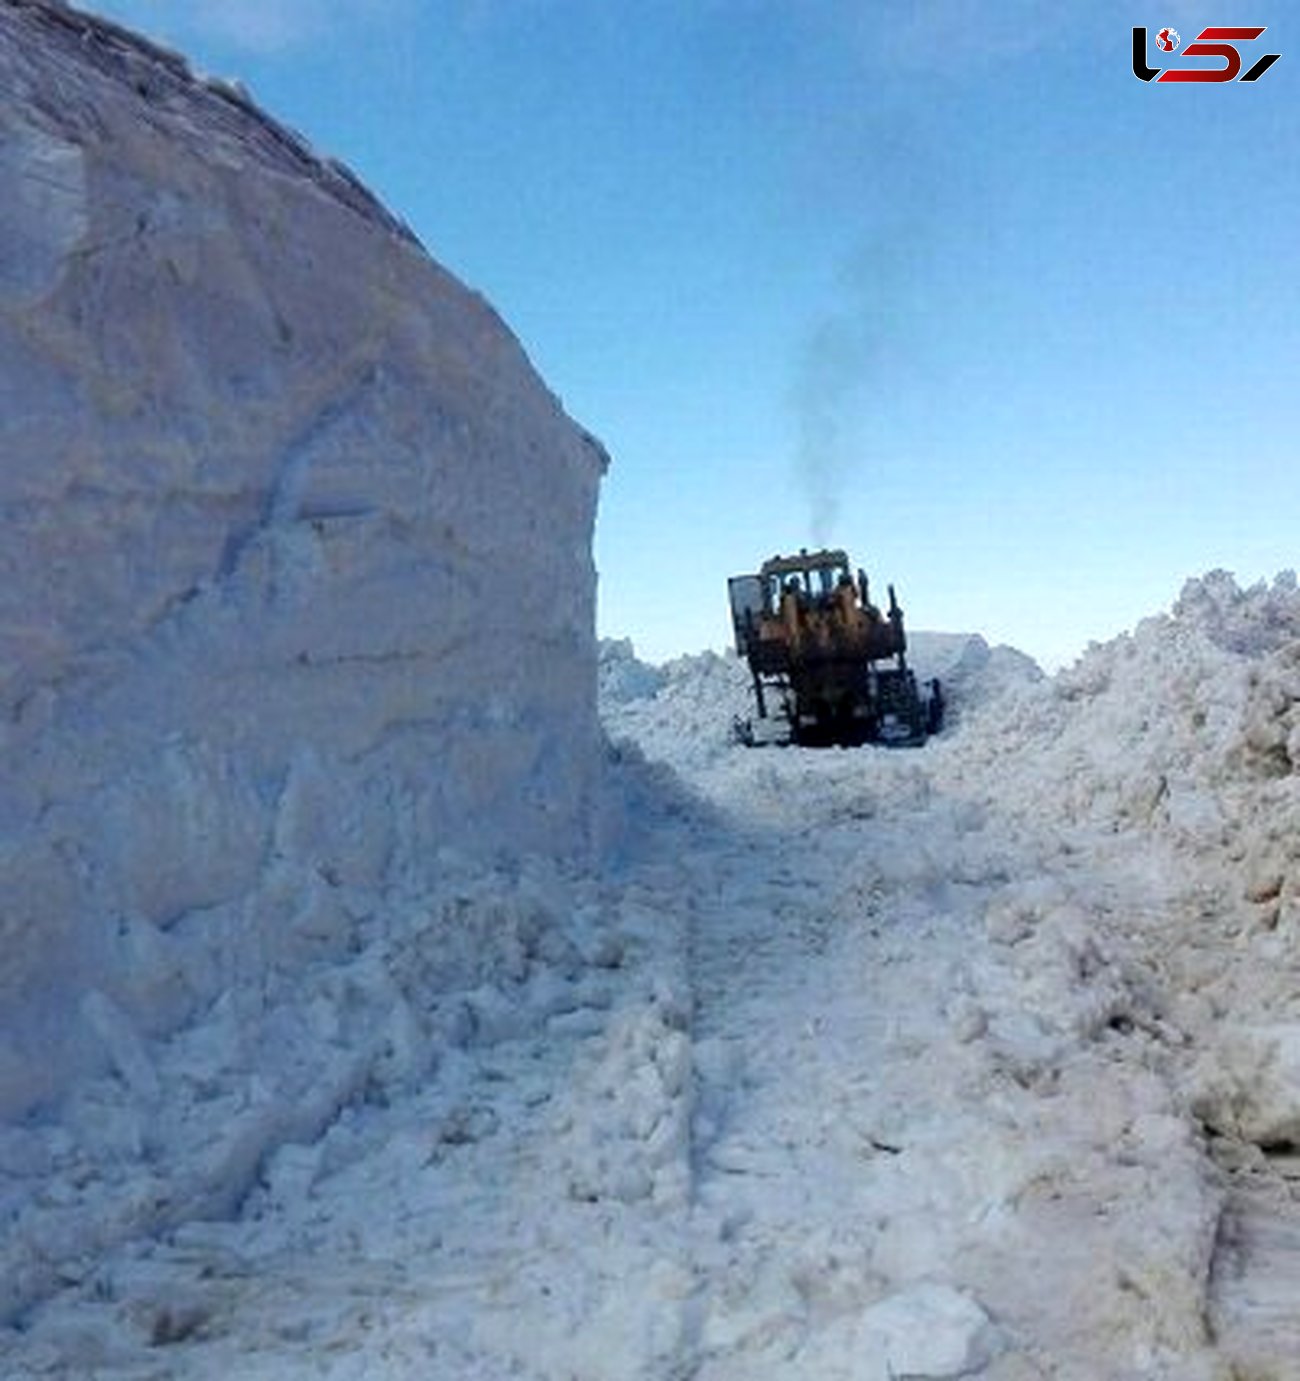 ارتفاع برف در گردنه «تته» کردستان به ۲متر رسید